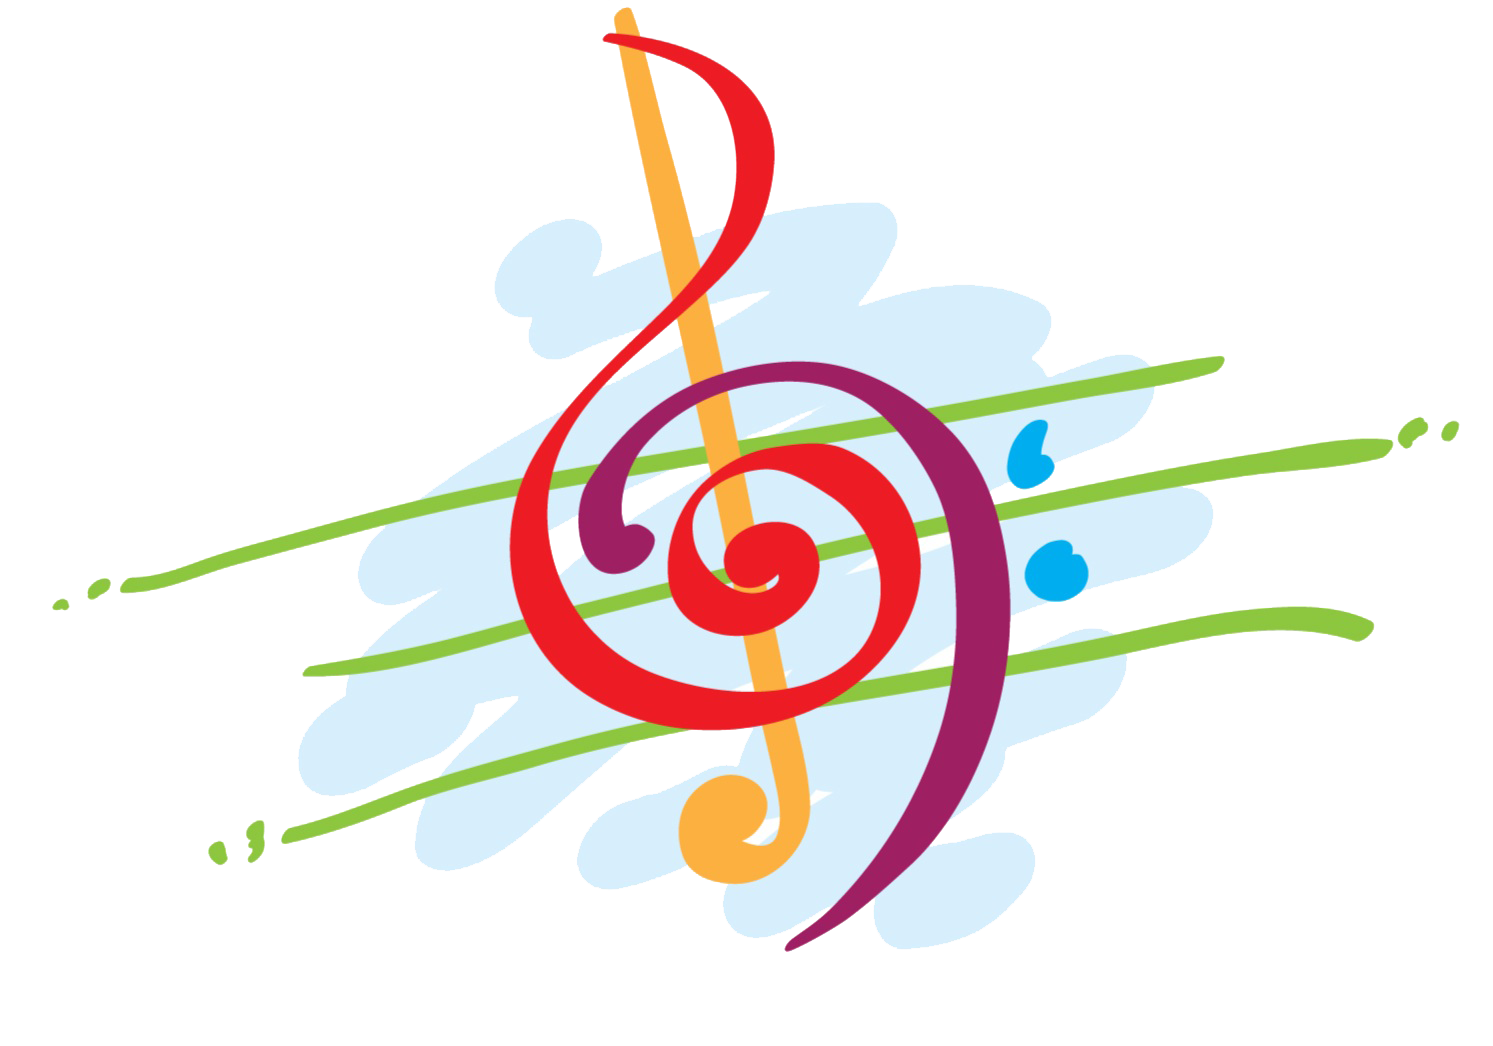 3 музыкальный конкурс. Символ музыкального творчества. Эмблема музыкальной школы. Эмблема музыкального конкурса. Музыкальные символы цветные.